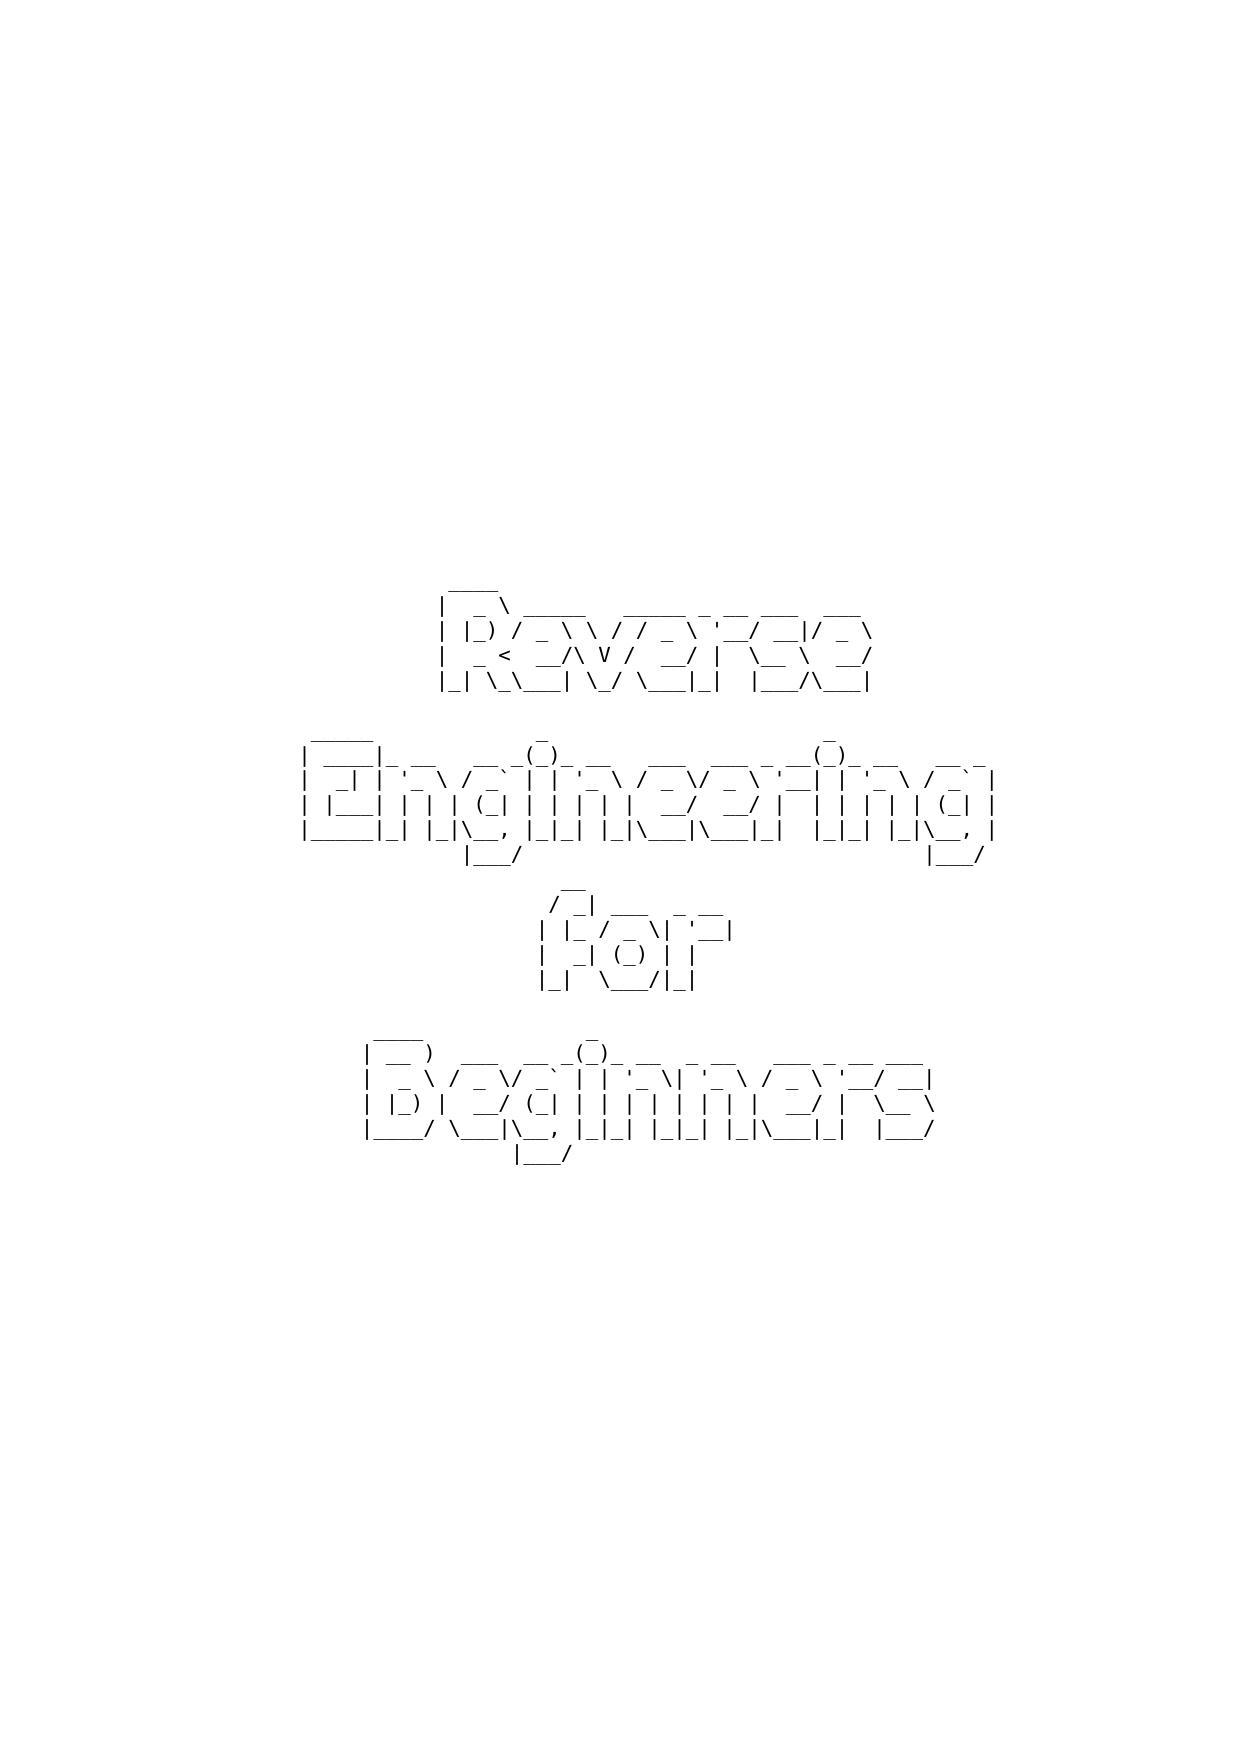 Reverse Engineering for Beginners